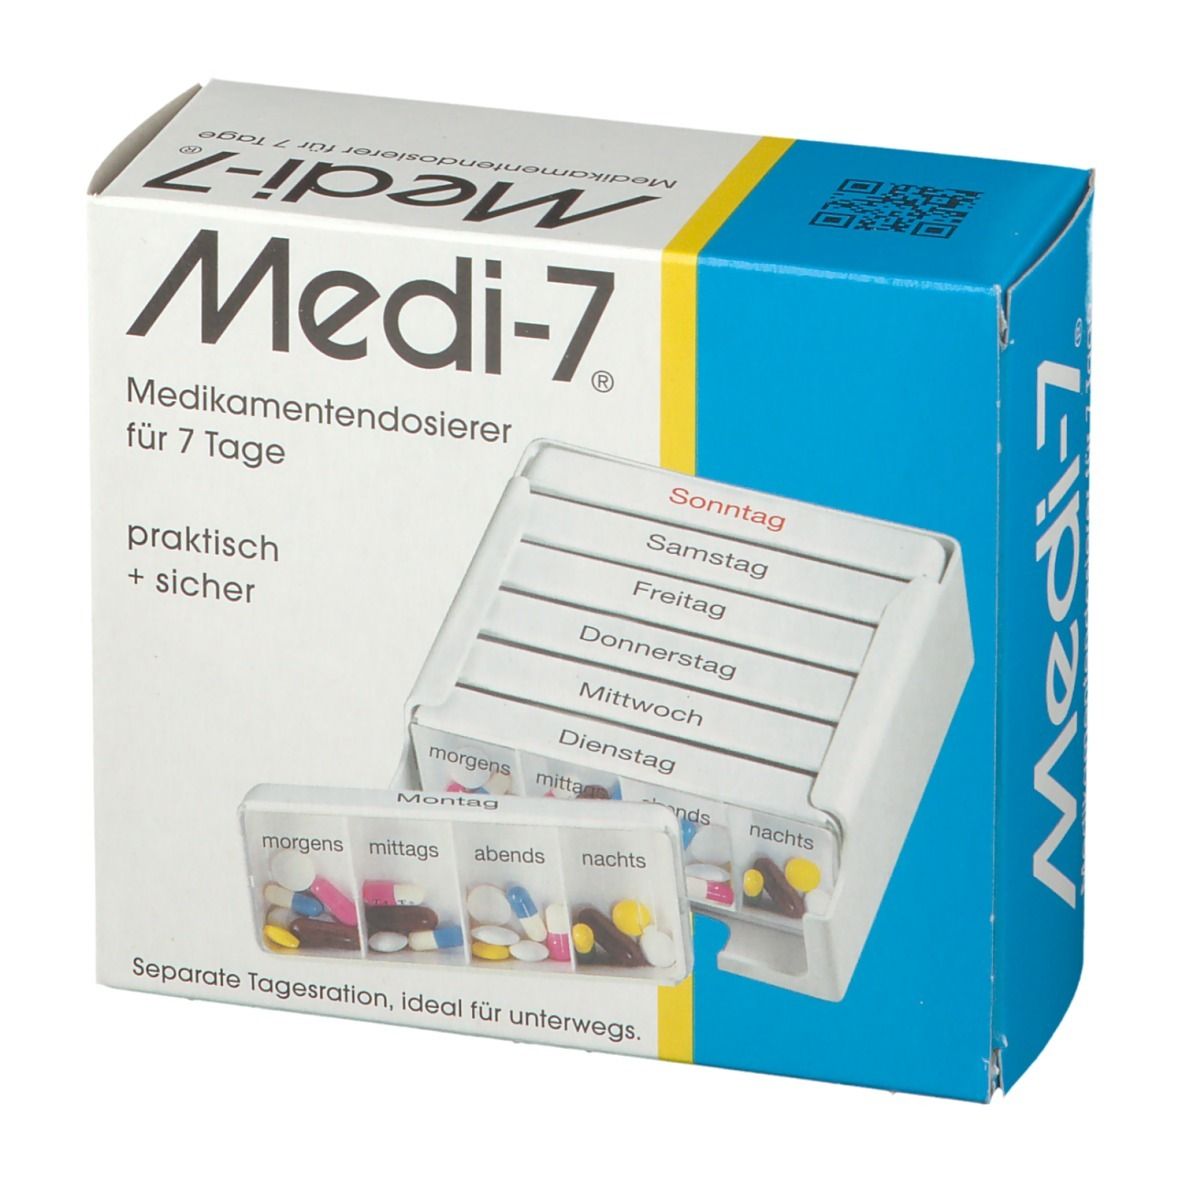 Medi-7 Medikamenten Dosierer